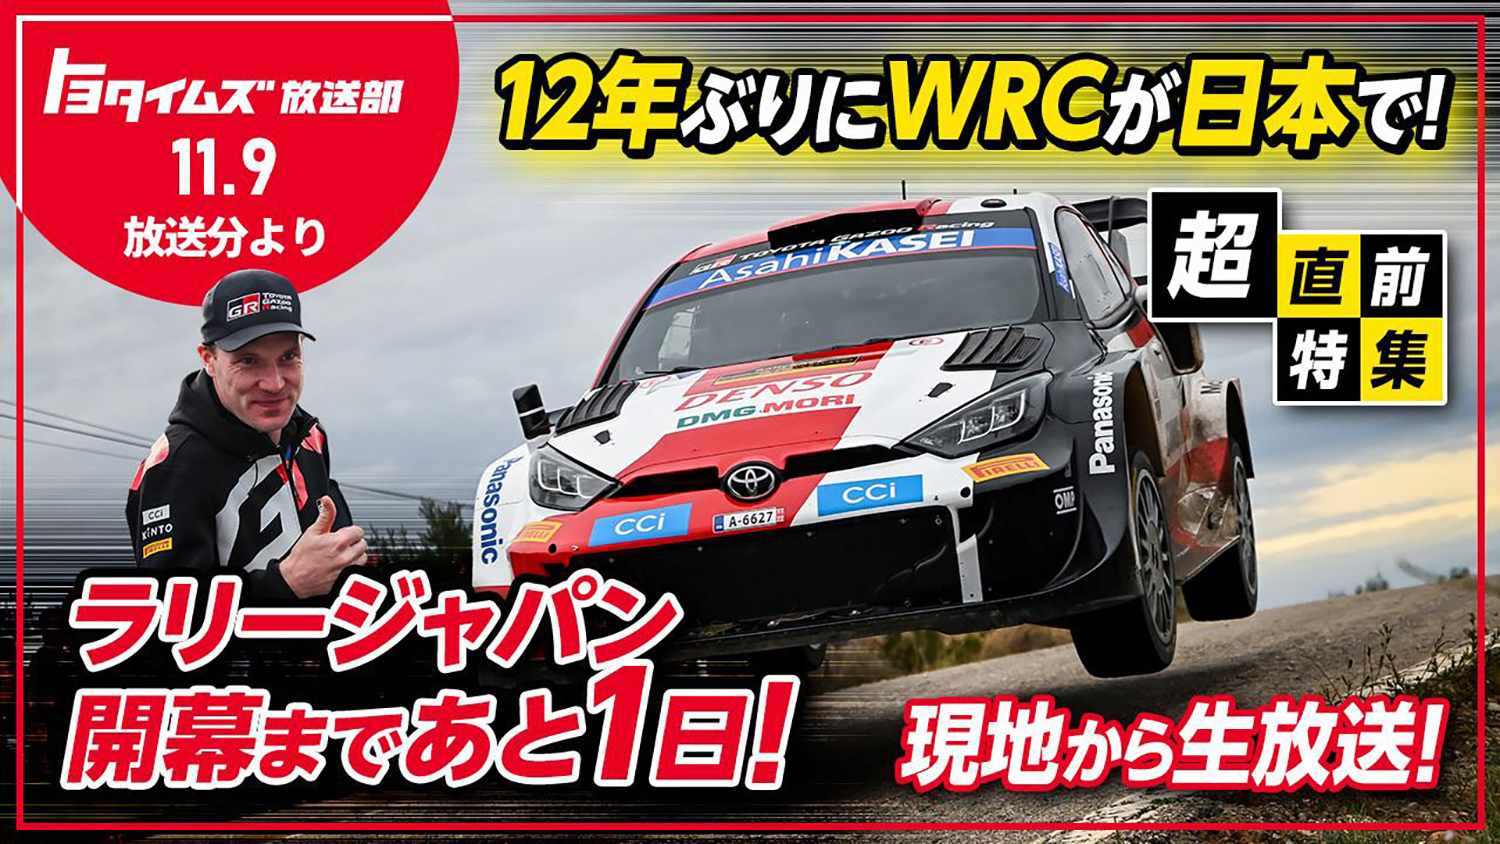 トヨタGazoo Racingの宣伝素材